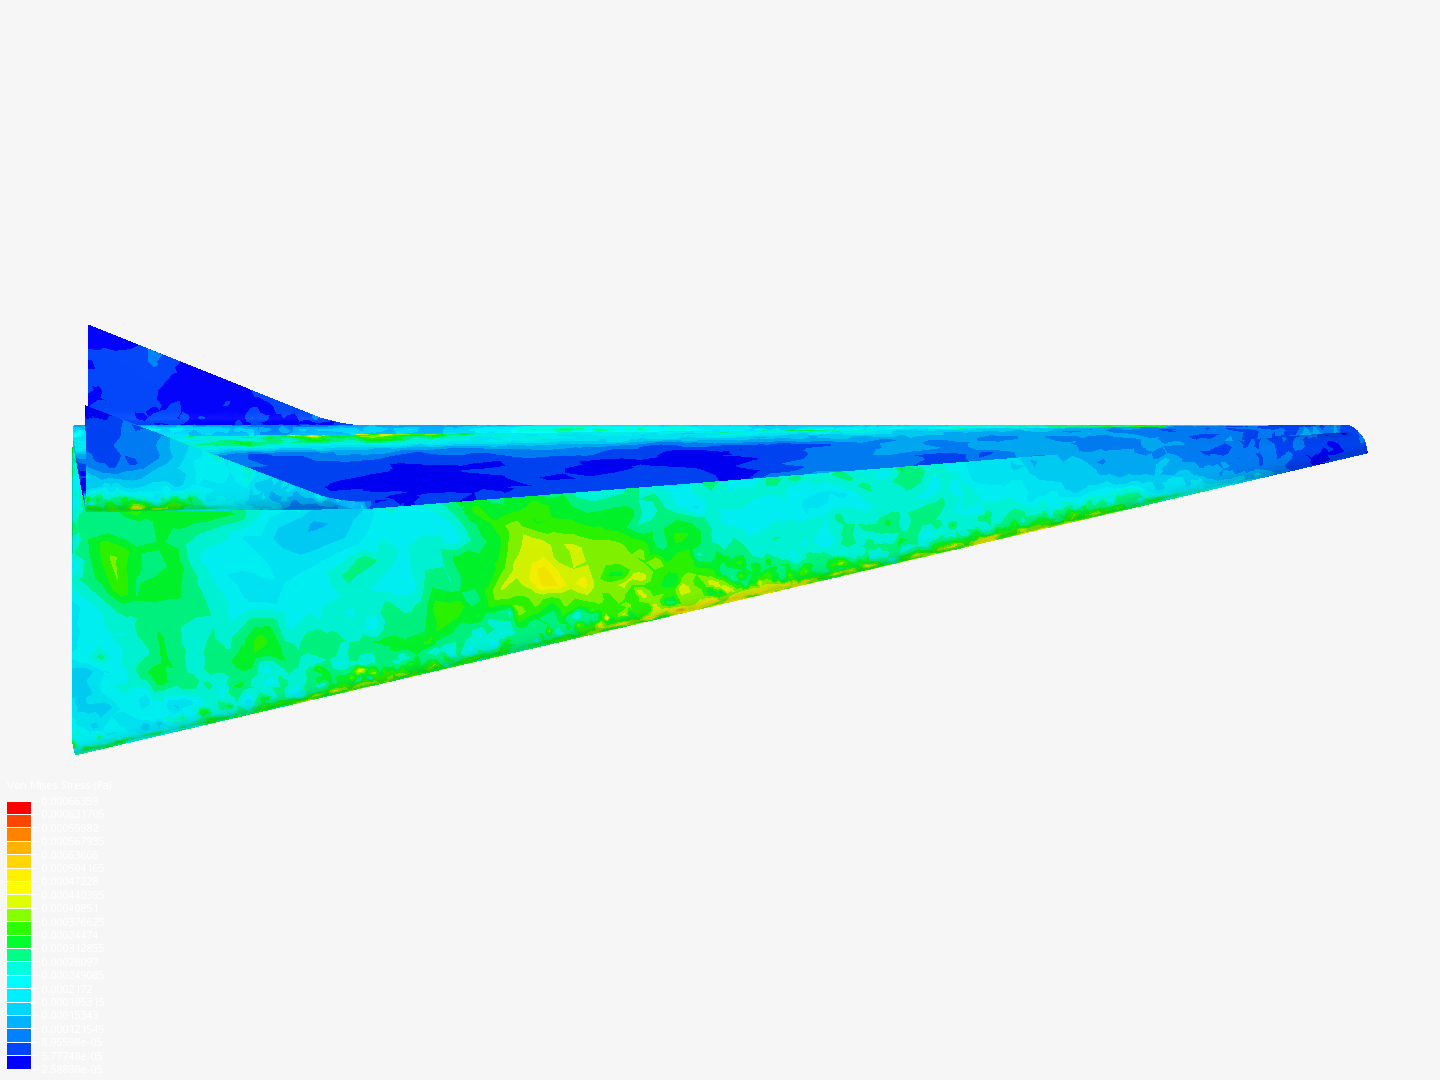 Aircraft Simulation image